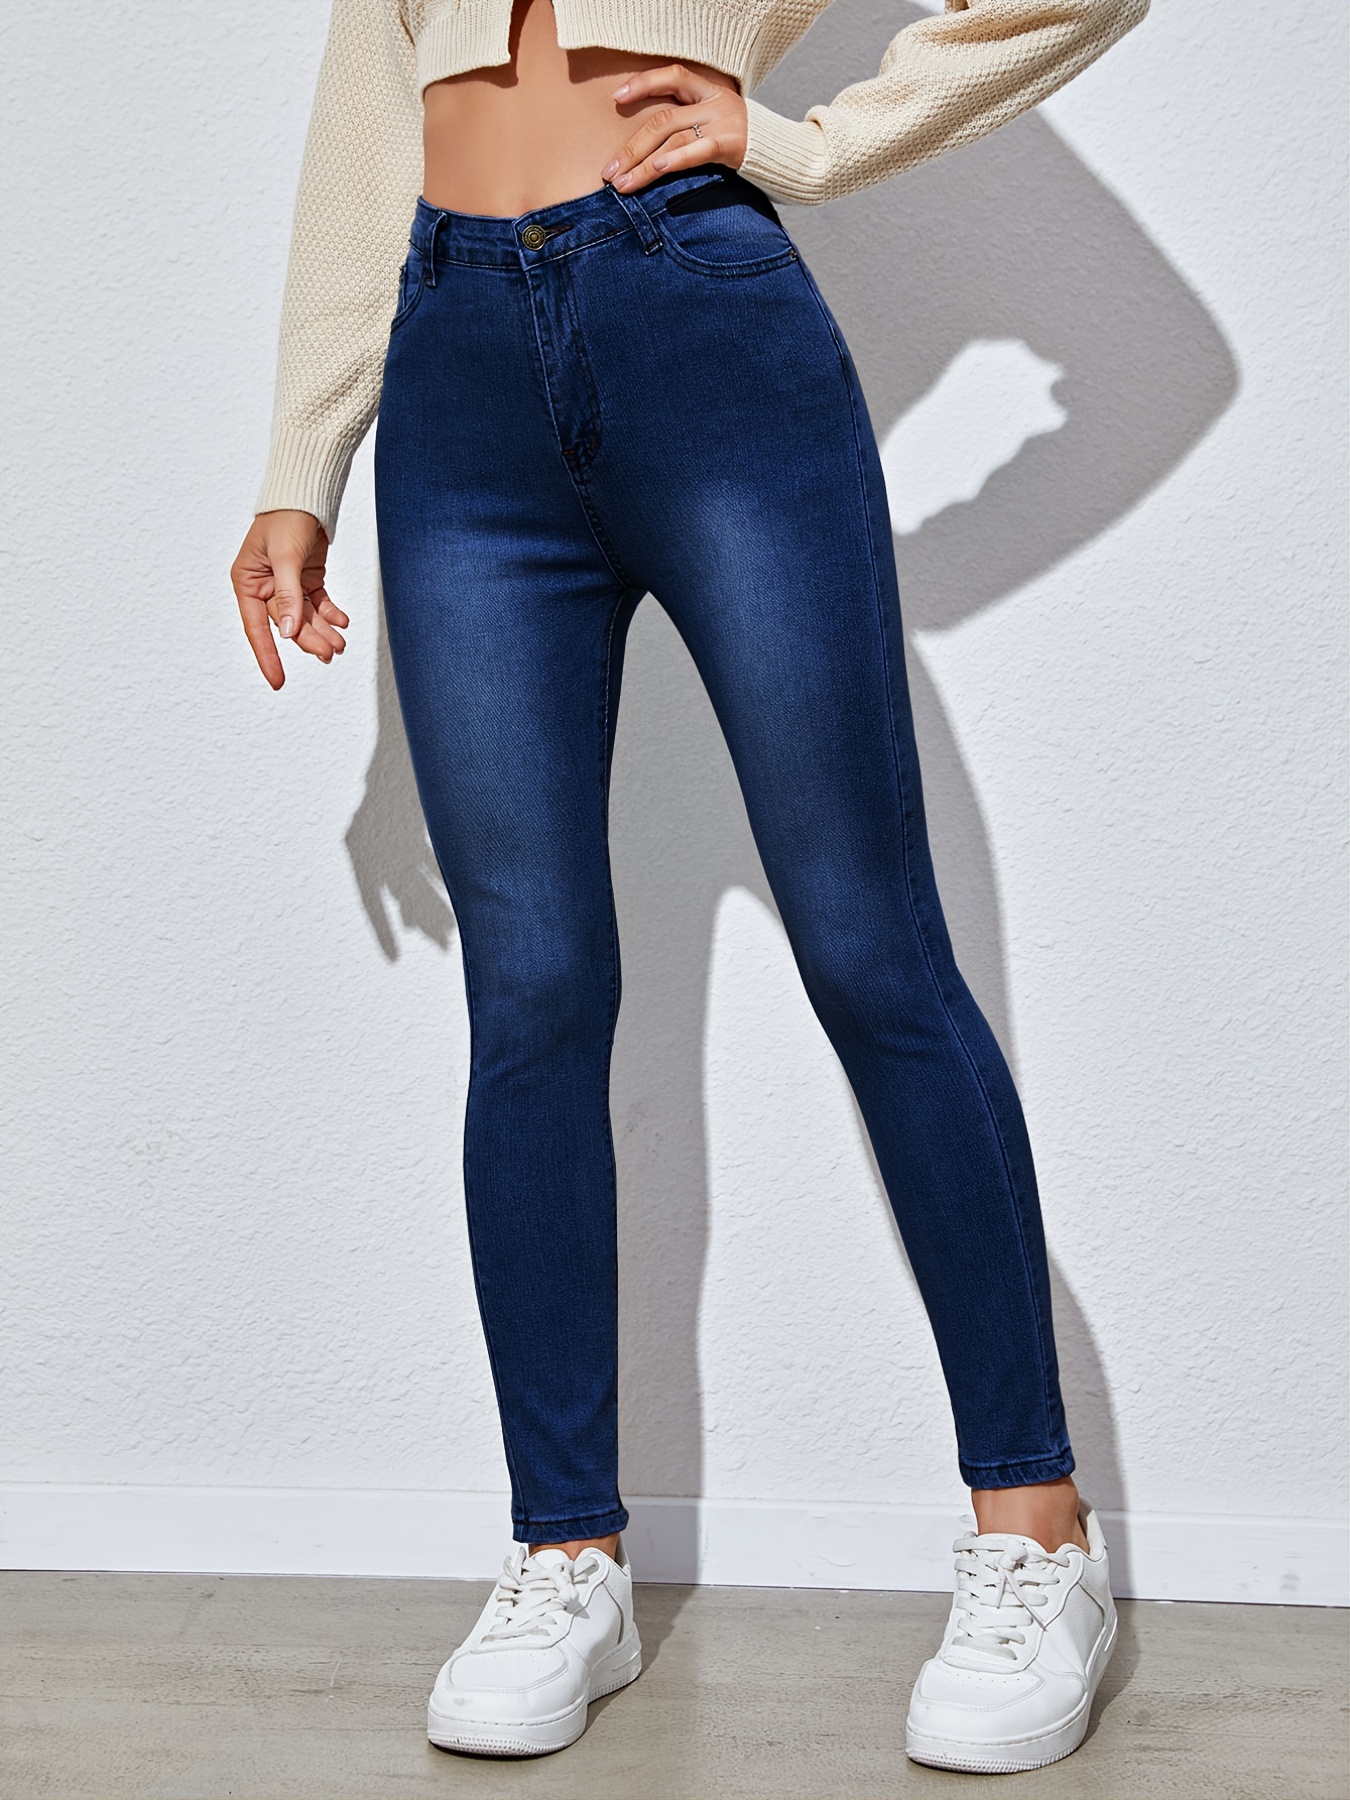 Jeans ajustados de color sólido de tiro alto, pantalones de mezclilla de  diseño liso ajustados y elásticos de cintura alta, ropa de mezclilla para  muj